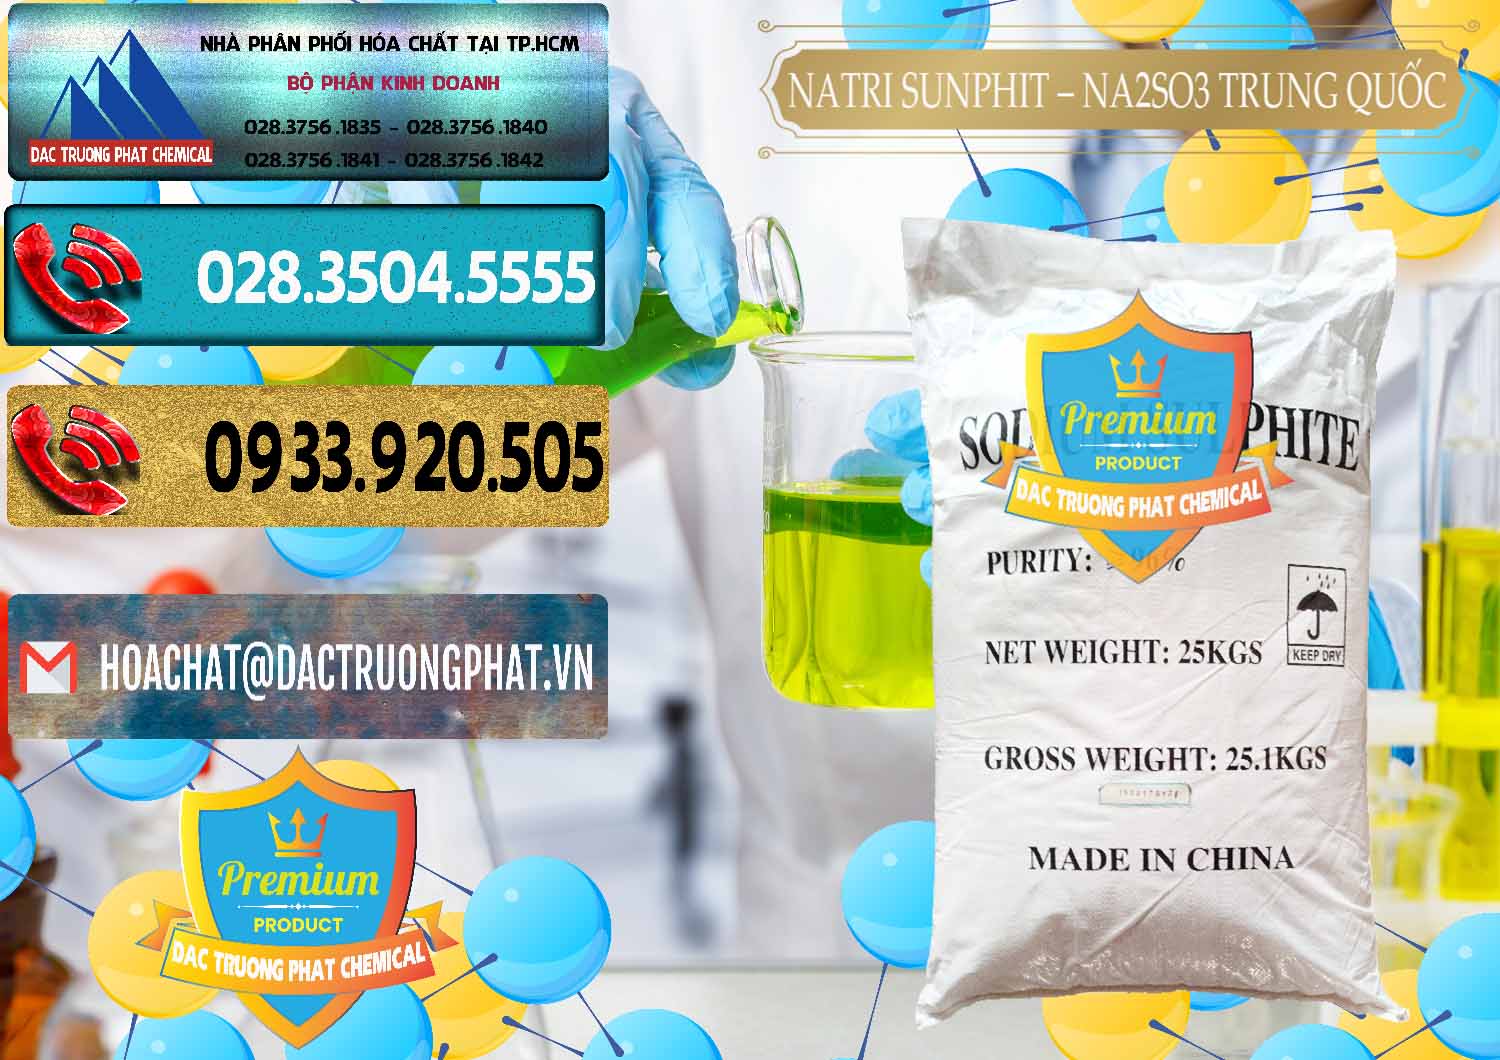 Nơi bán ( cung cấp ) Natri Sunphit - NA2SO3 Trung Quốc China - 0106 - Công ty chuyên bán ( phân phối ) hóa chất tại TP.HCM - hoachatdetnhuom.com